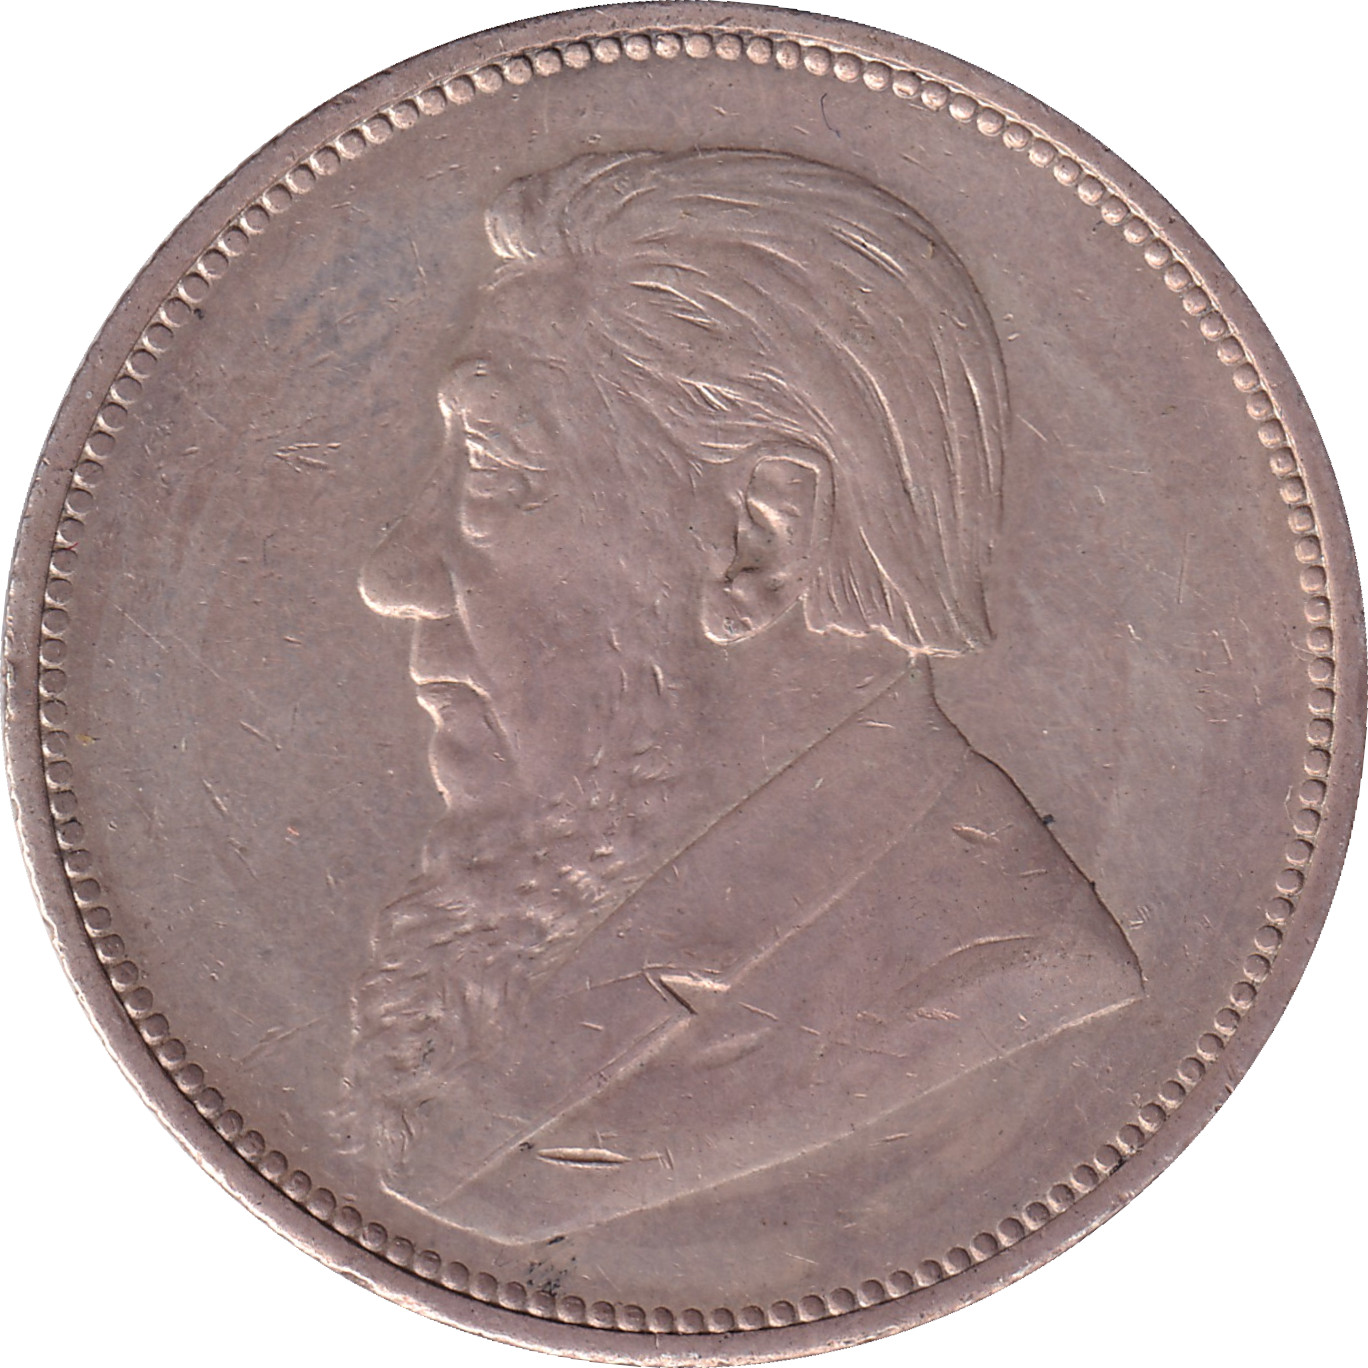 2 shillings - Krugger